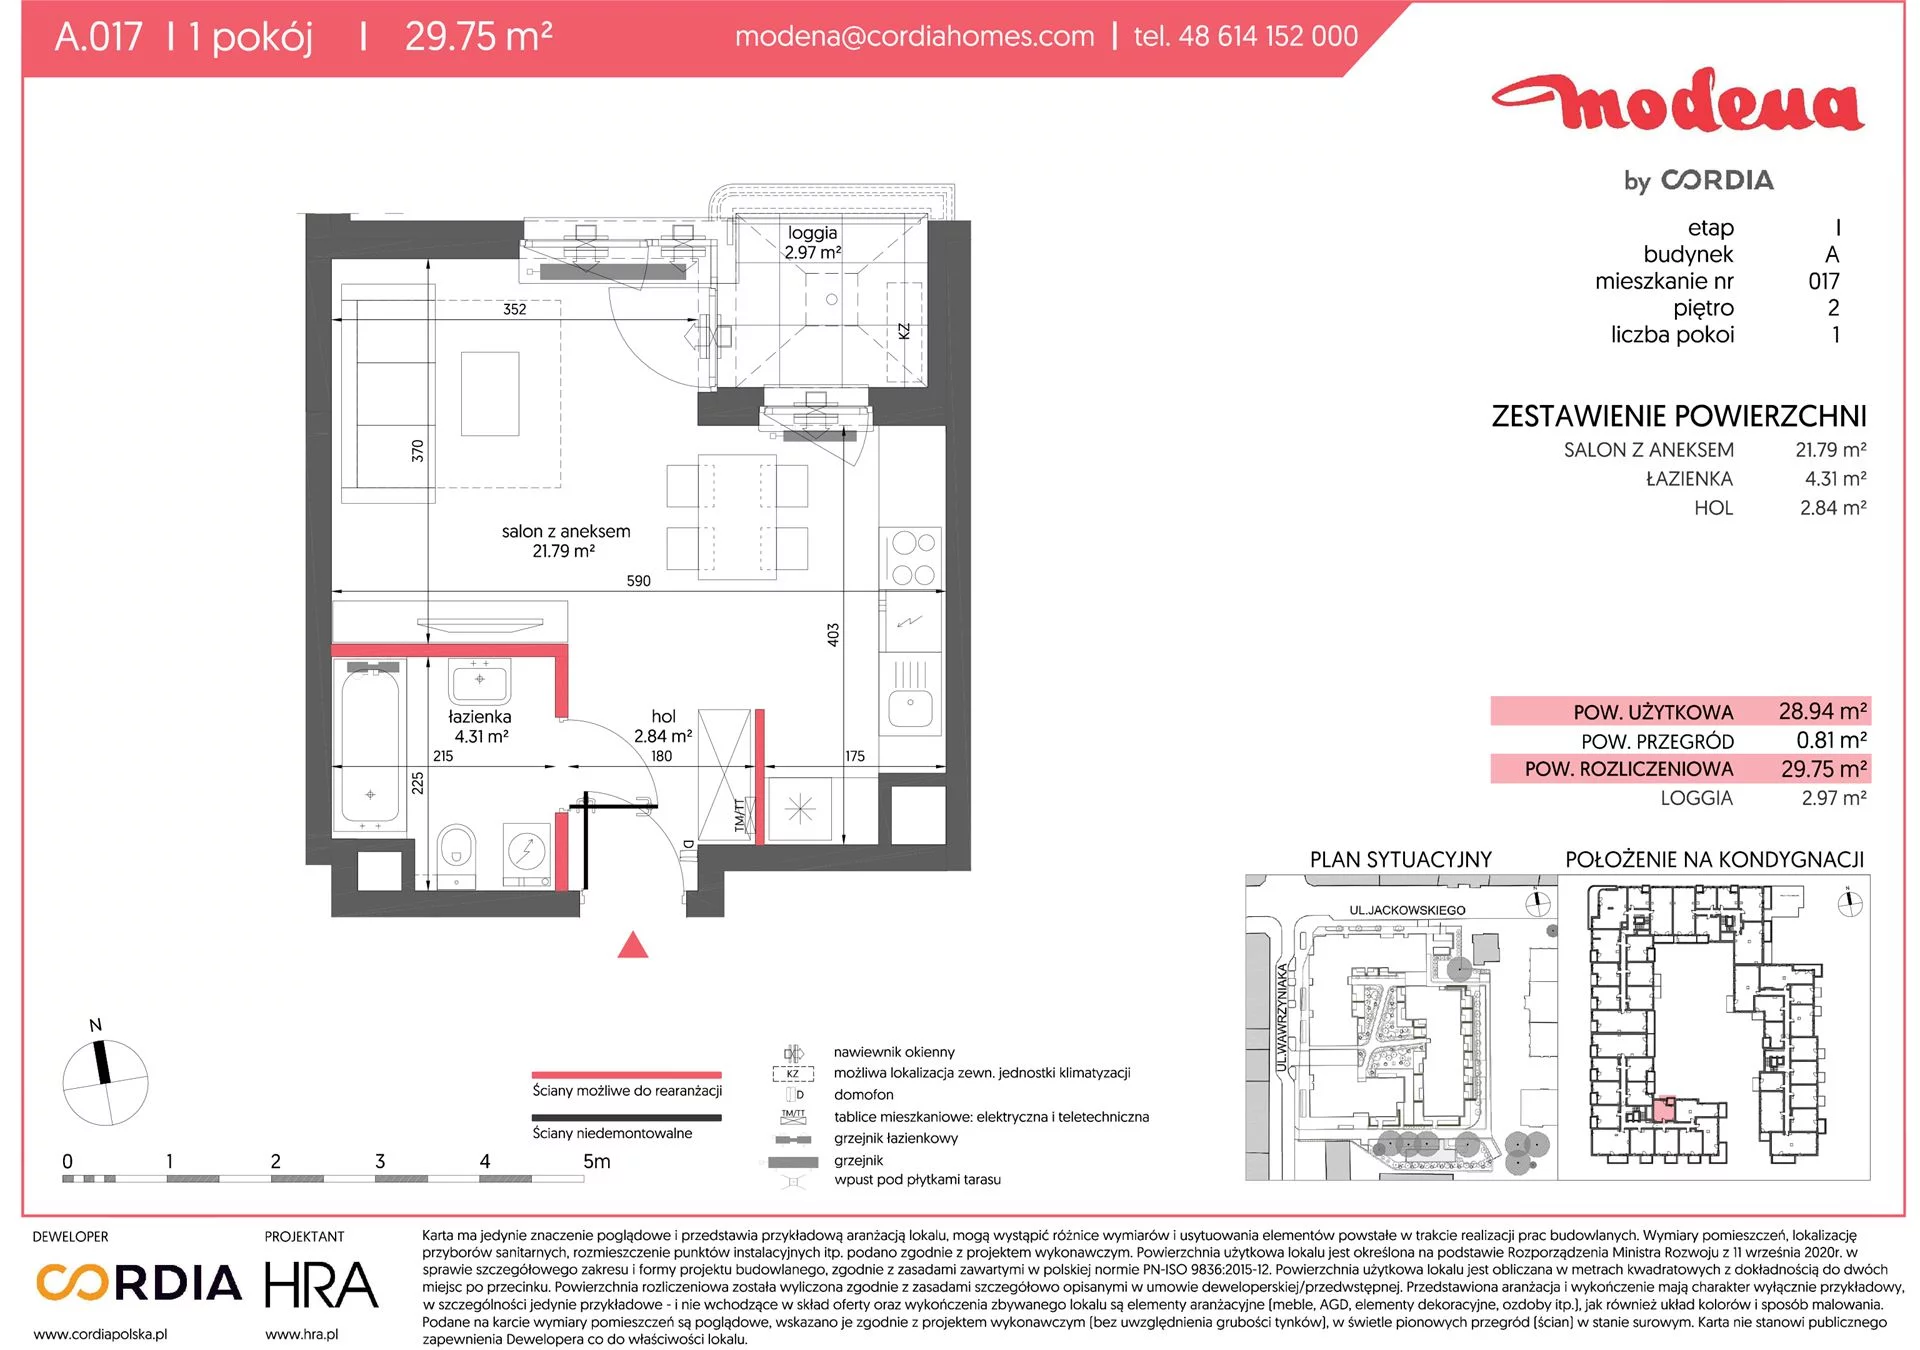 Mieszkanie 29,75 m², piętro 2, oferta nr A.017, Modena, Poznań, Jeżyce, Jeżyce, ul. Jackowskiego 24